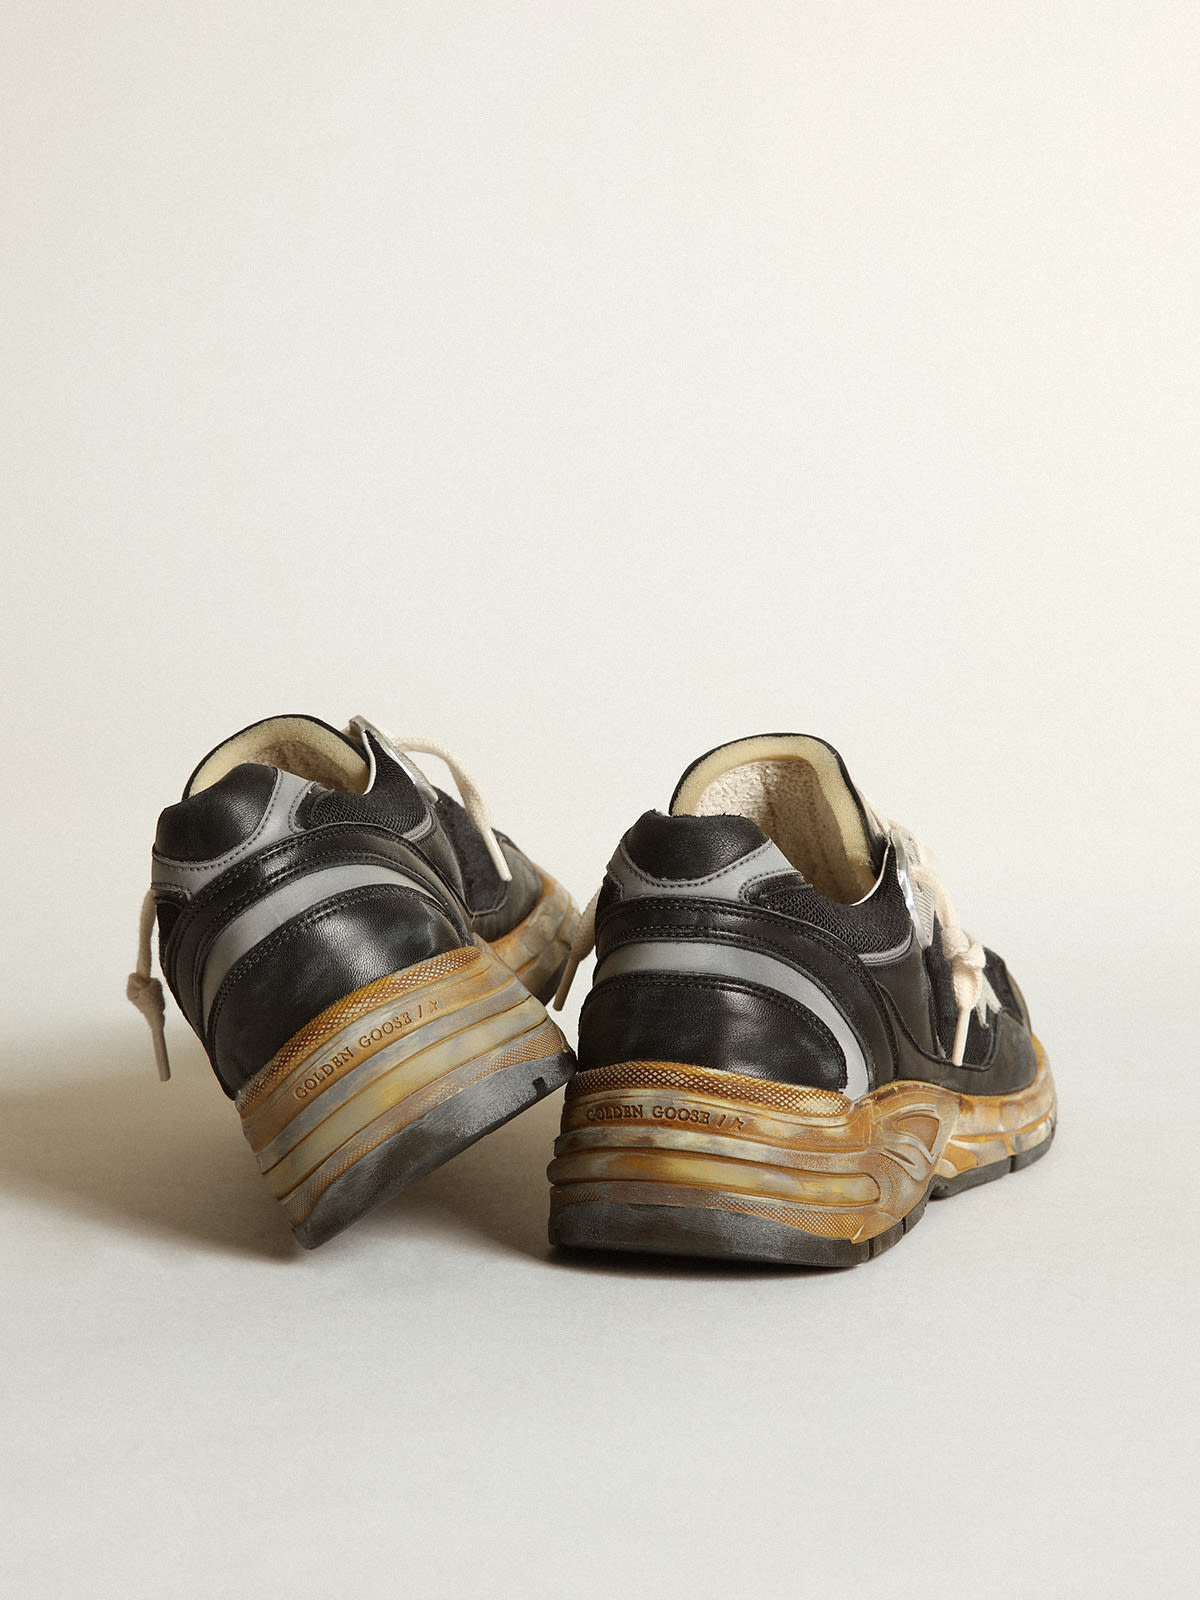 Golden Goose - Sneakers Dad-Star pour femme en résille et en cuir nappa de couleur noire avec étoile en daim gris froid in 